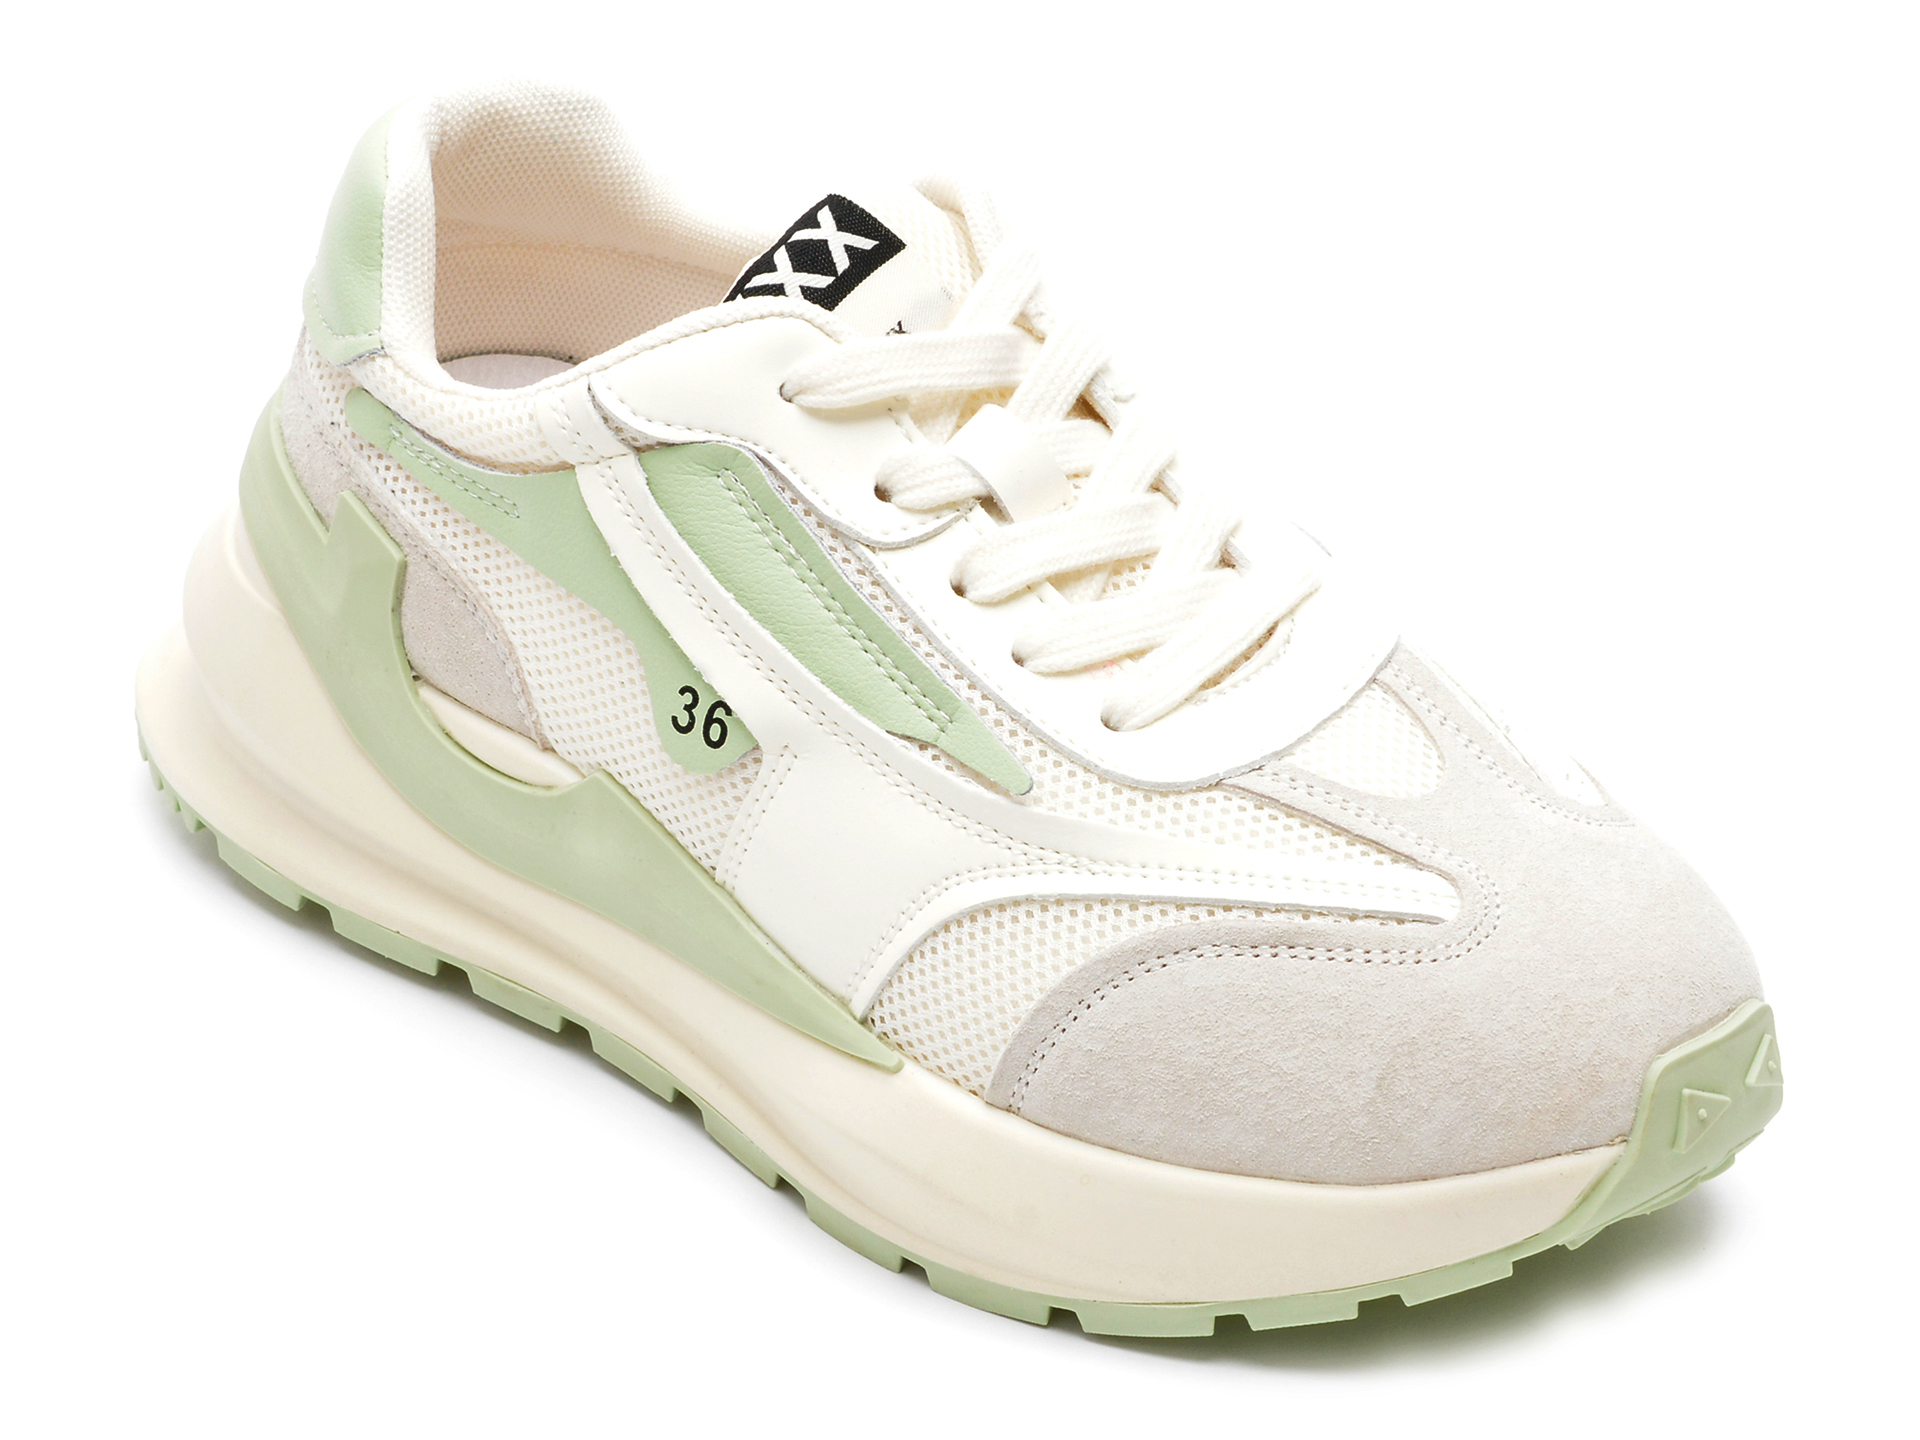 Pantofi sport GRYXX albi, 2209, din material textil si piele naturala Gryxx